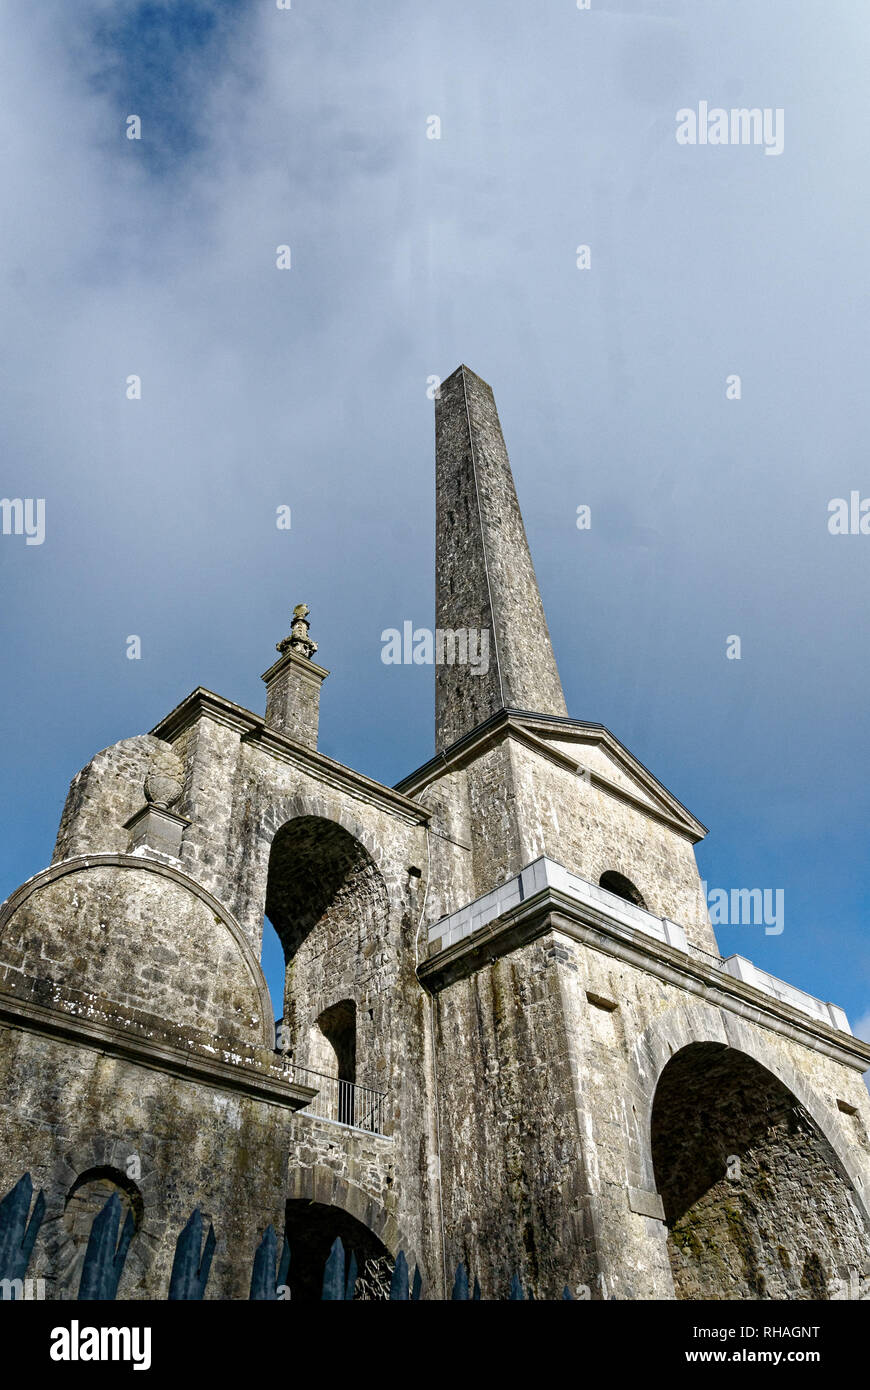 Conolly's Folly,l'Obelisco,originariamente la follia Conolly,è un obelisco struttura e monumento nazionale situato nei pressi di Maynooth,County Kildare, Irlanda. Foto Stock